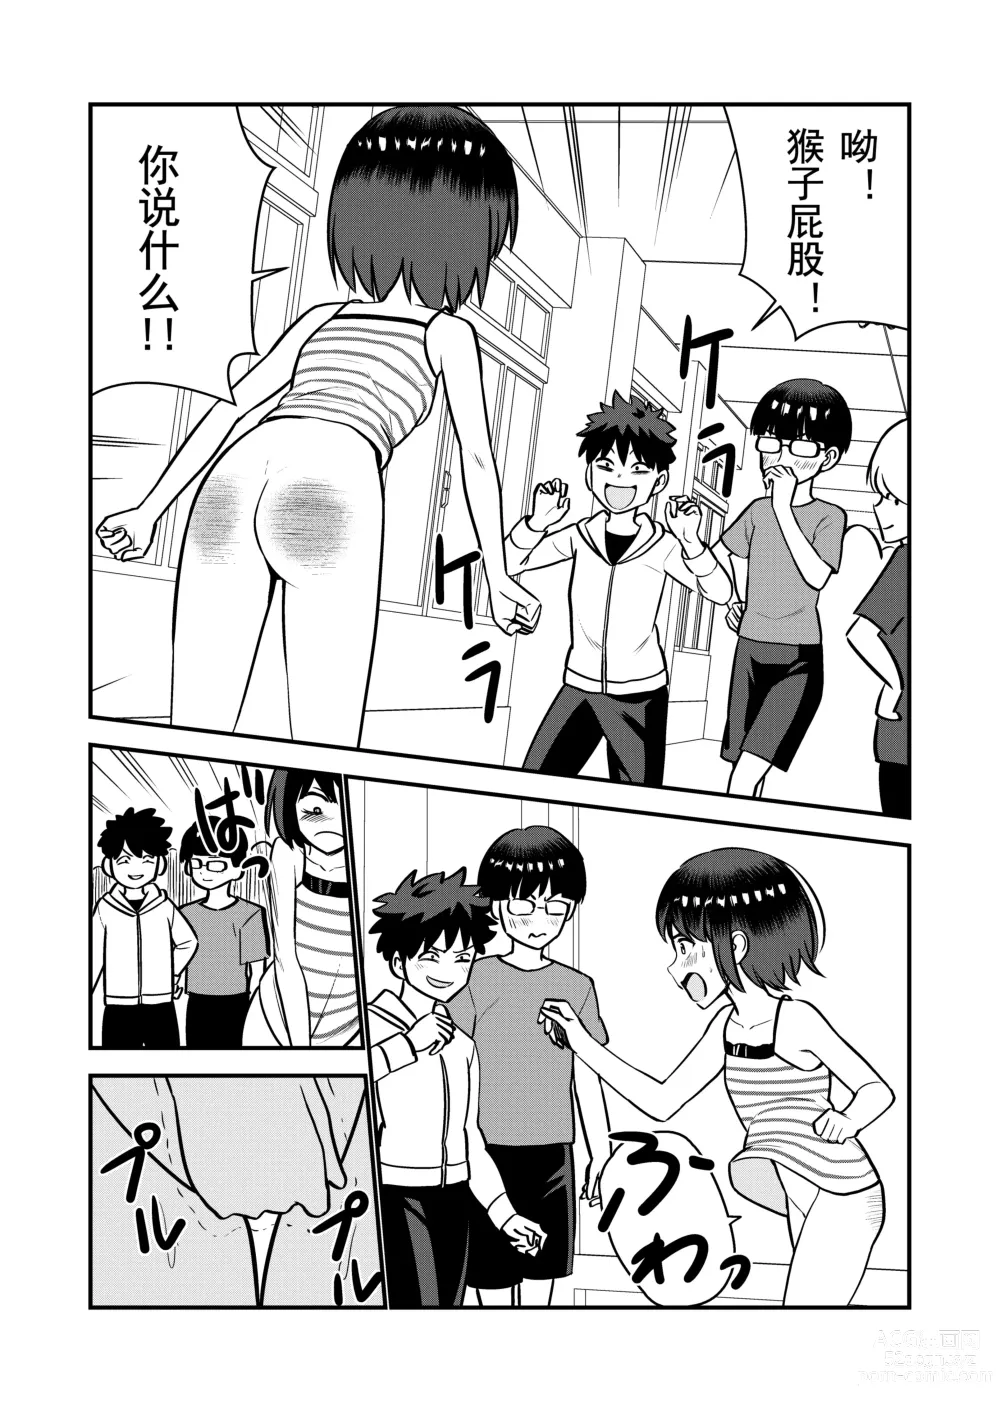 Page 23 of doujinshi 被惩罚后的当天,下半身禁止穿衣服的学校